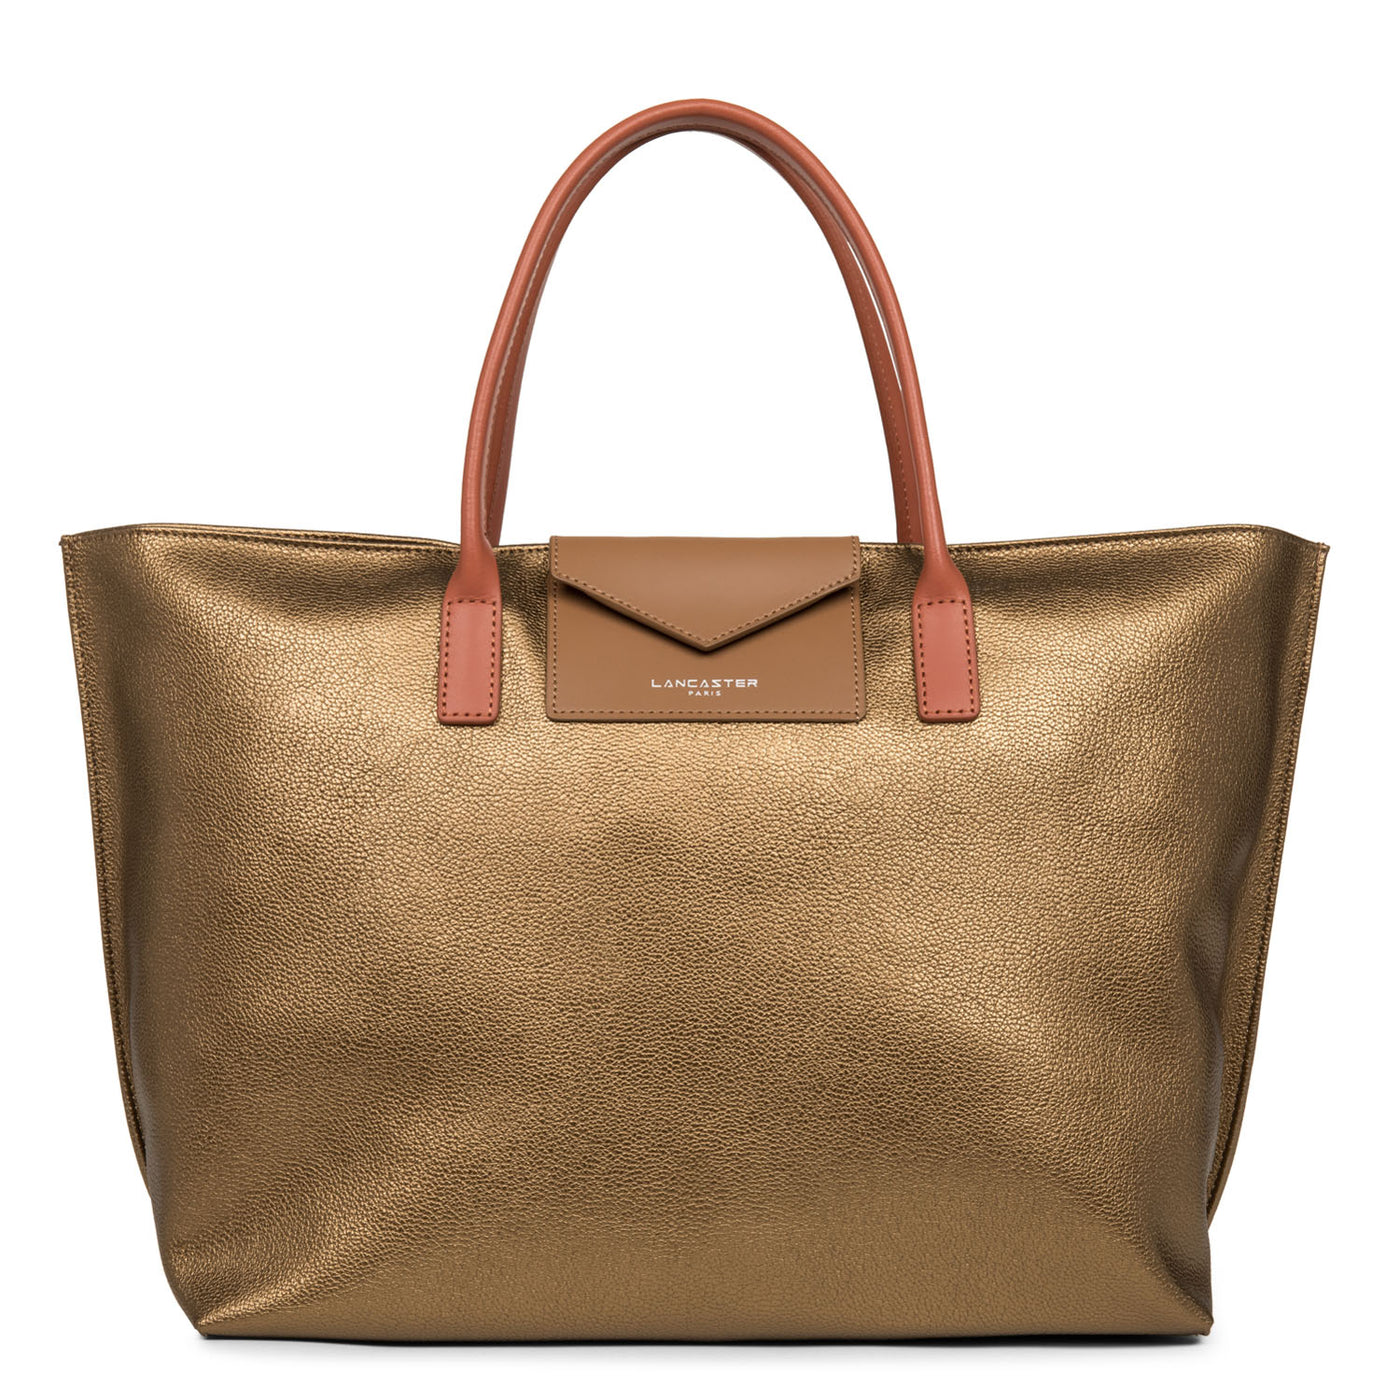 grand sac cabas main - maya #couleur_bronze-camel-potiron